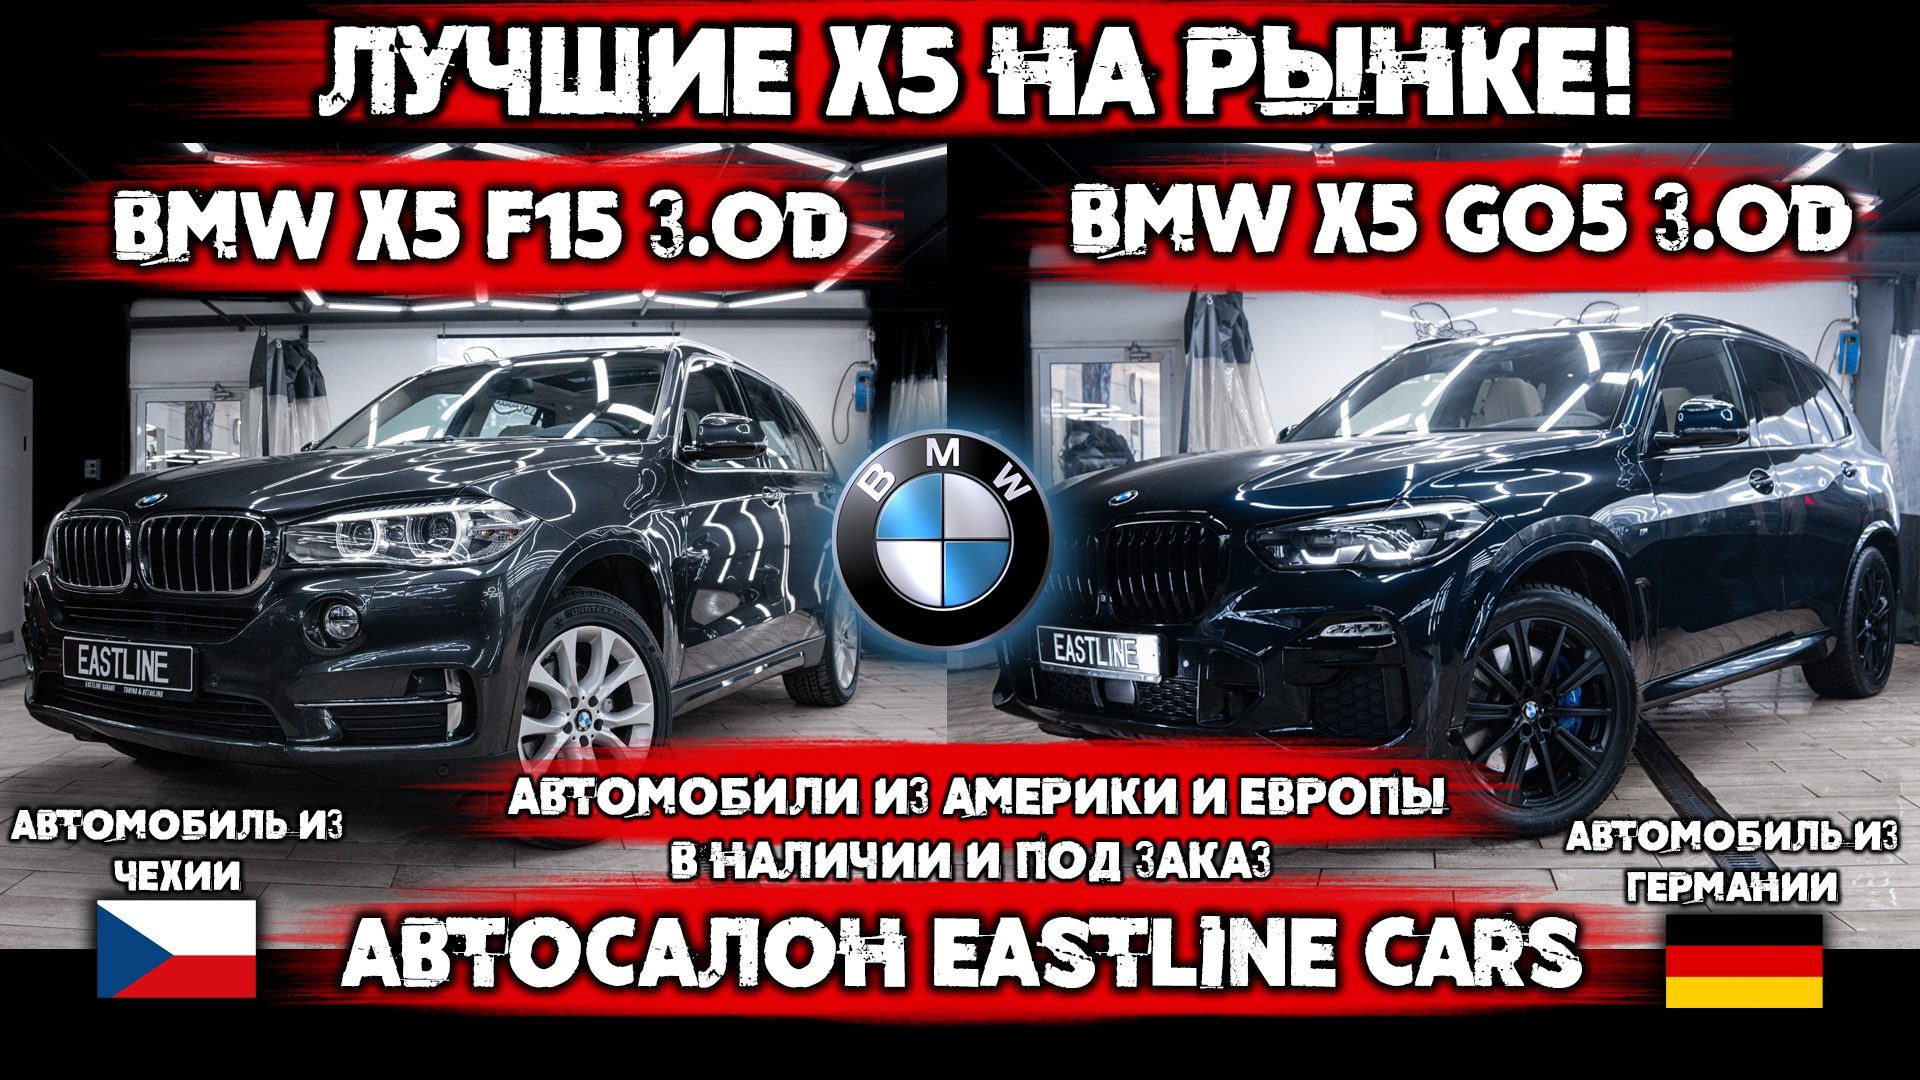 Eastline Cars. Сразу два BMW X5 из Европы ждут Вас! 